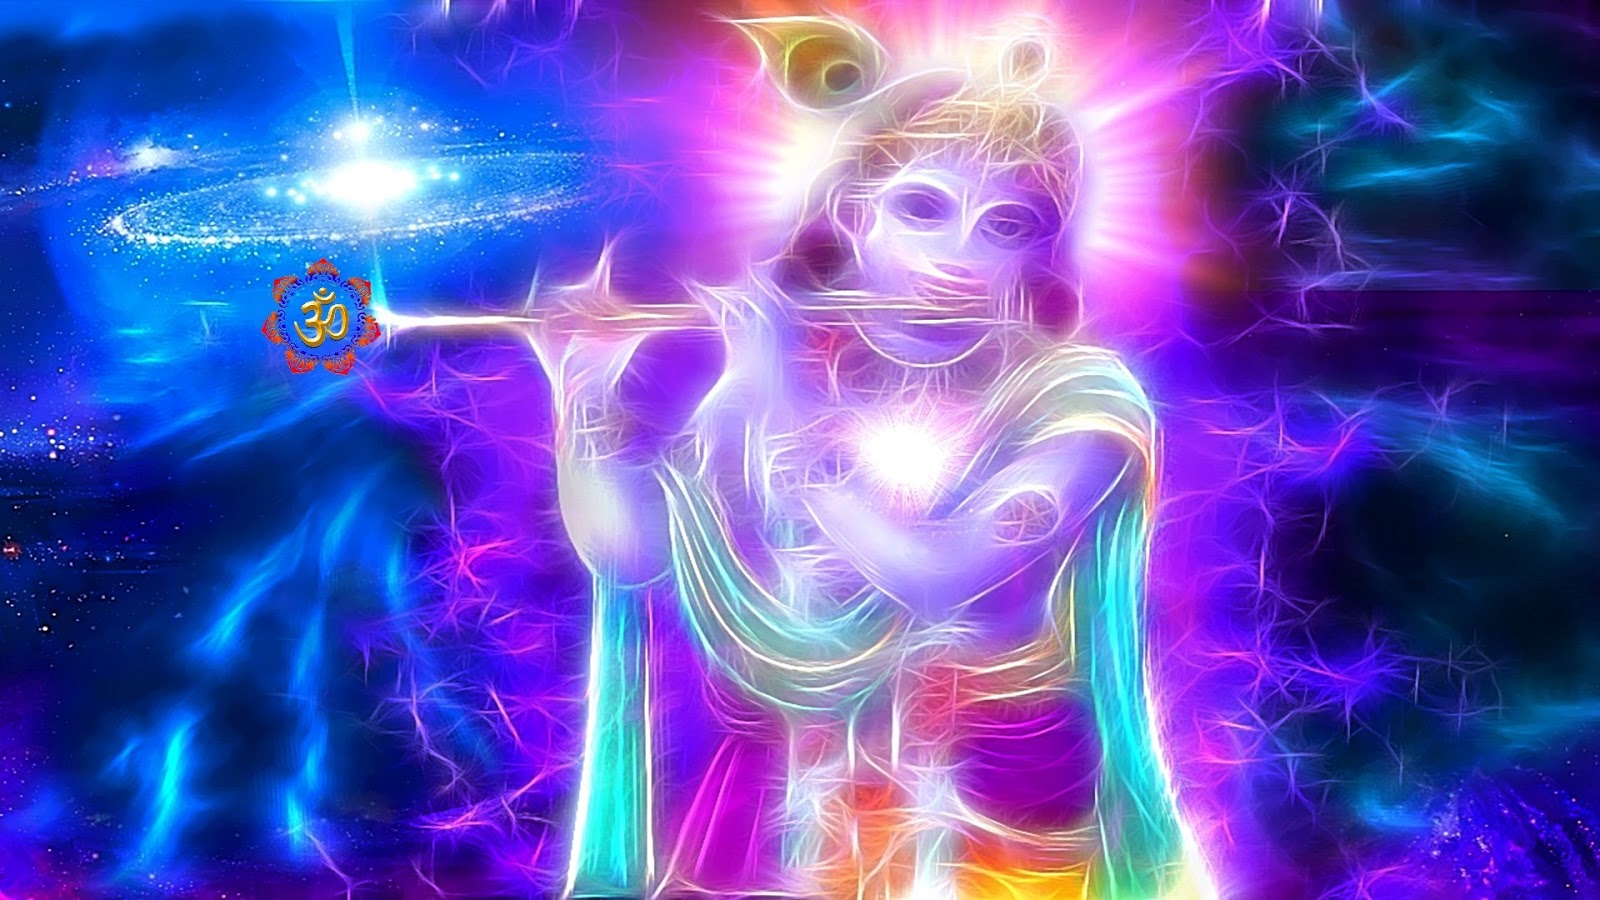 3D Hindu God Wallpaper Krishna Facebook Cover